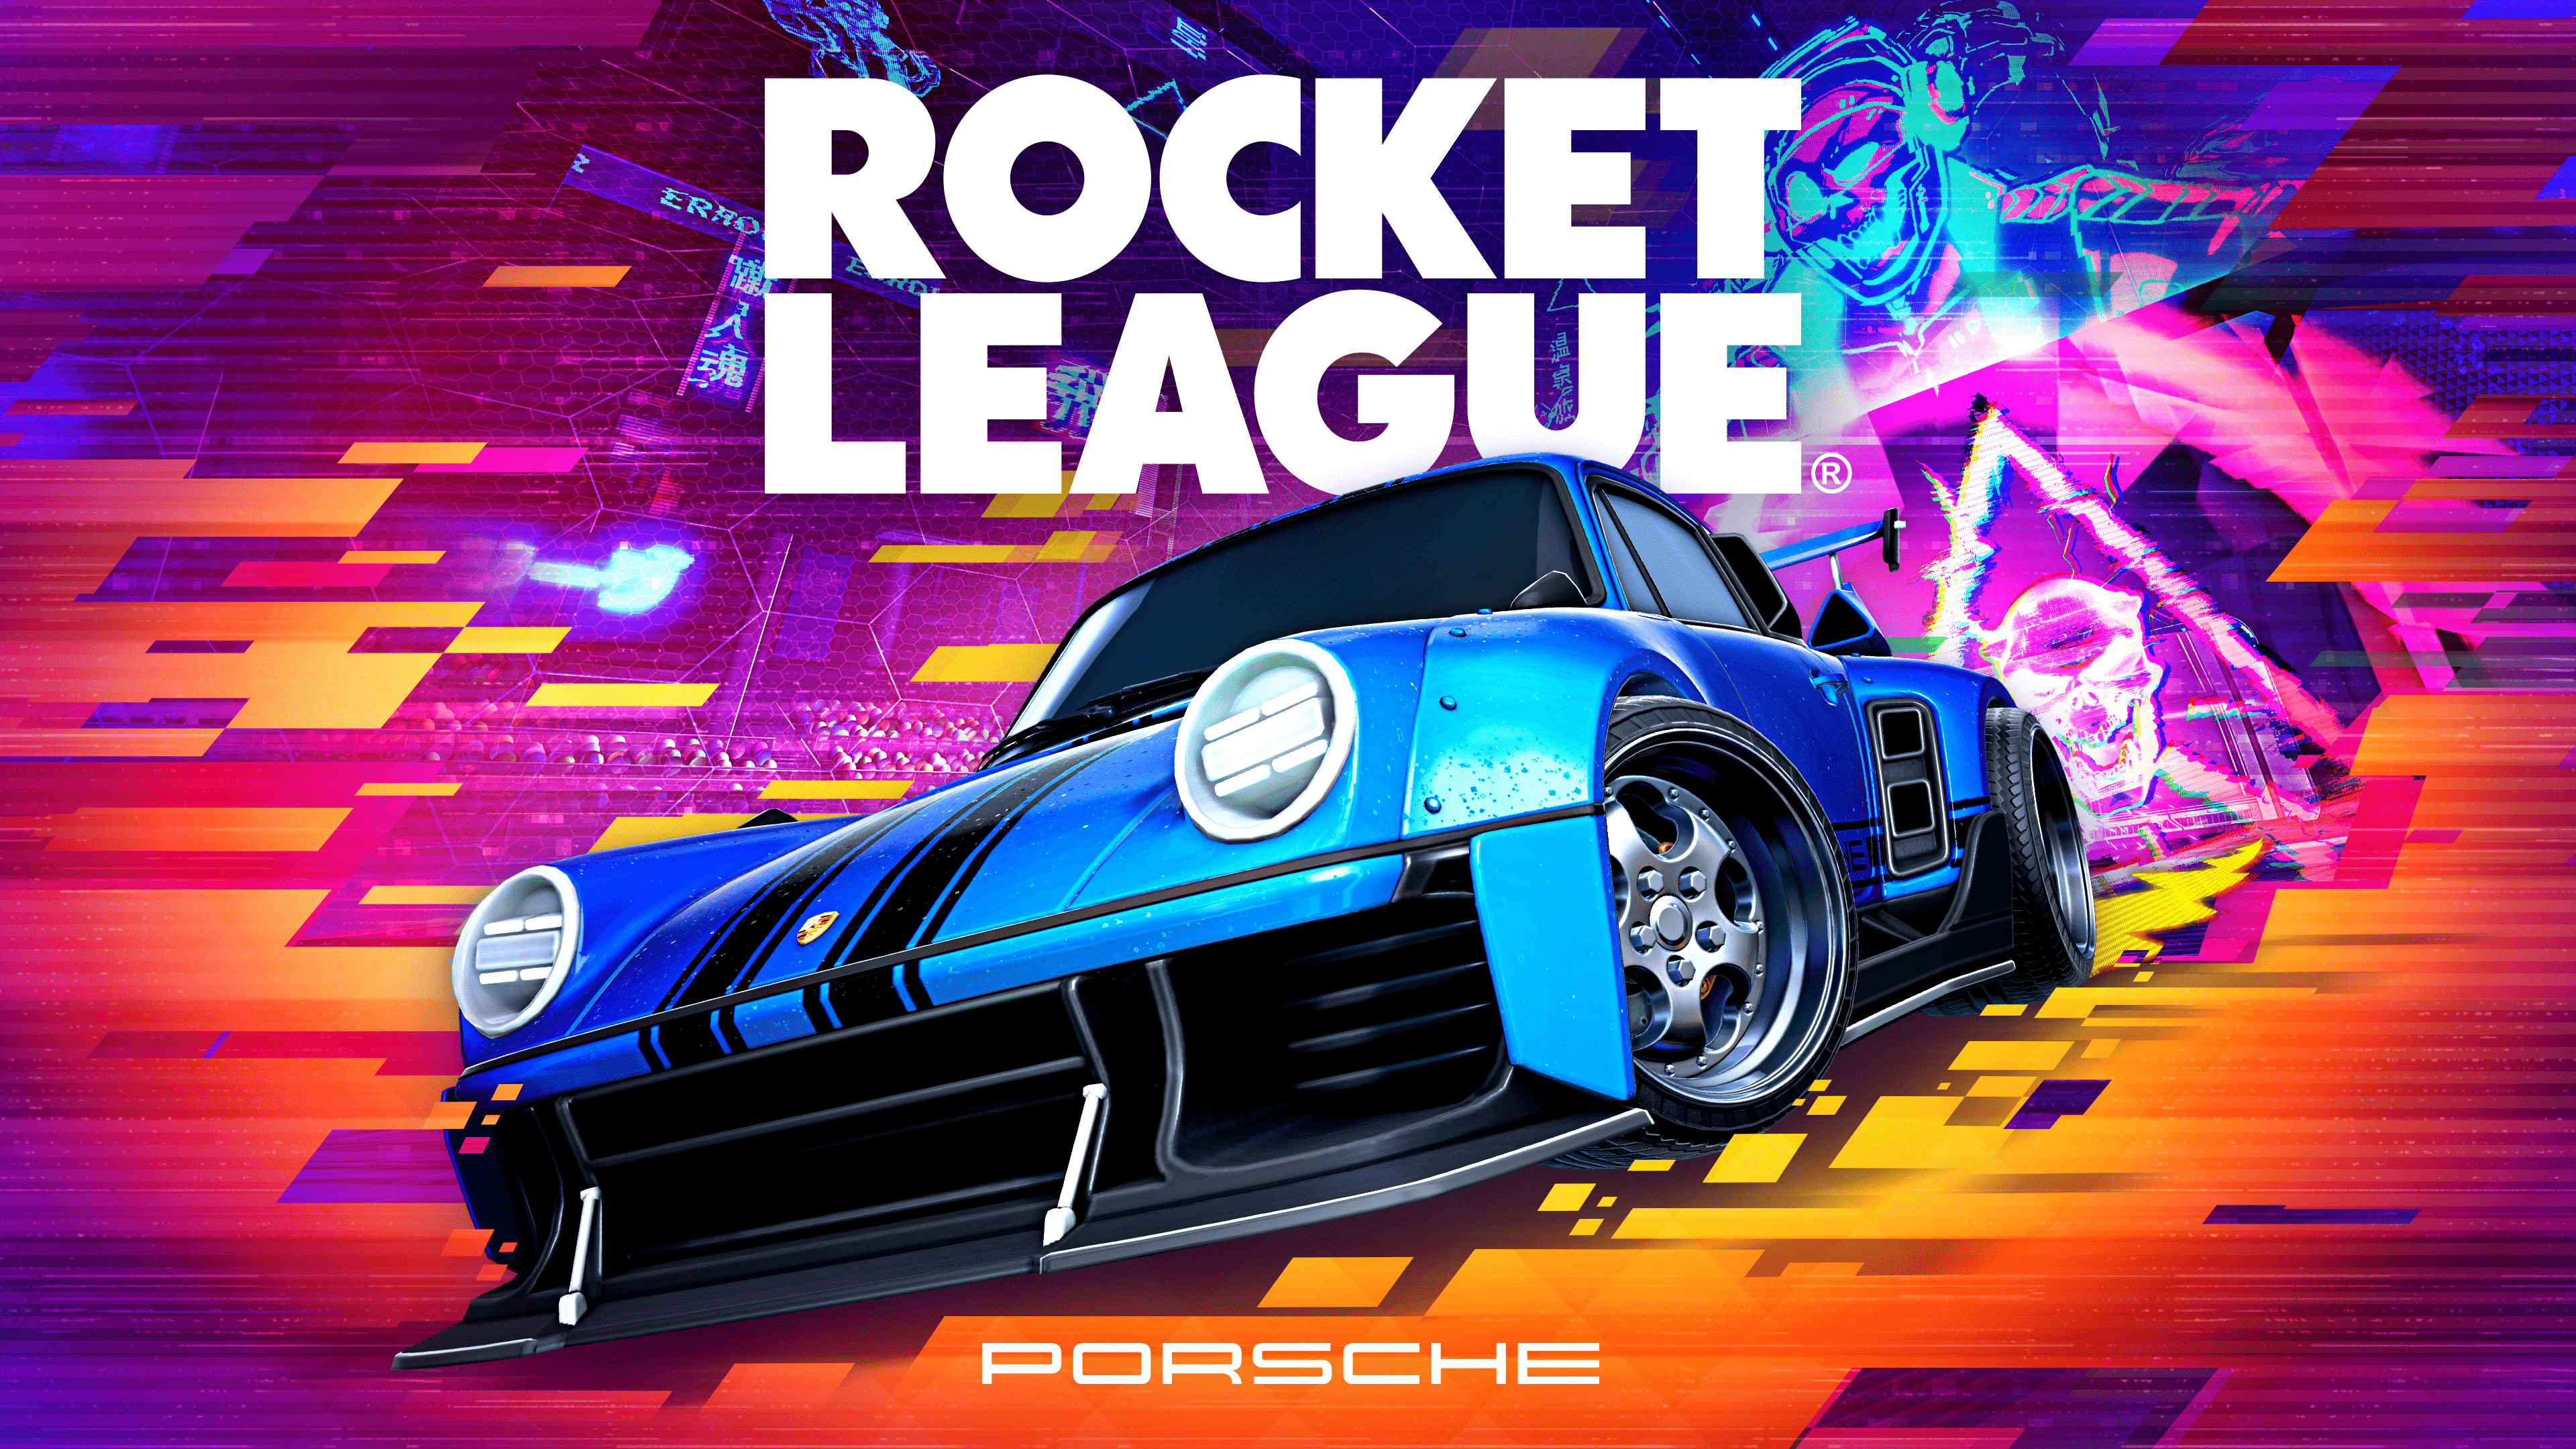 Rocket League - Official Lightning McQueen Trailer 